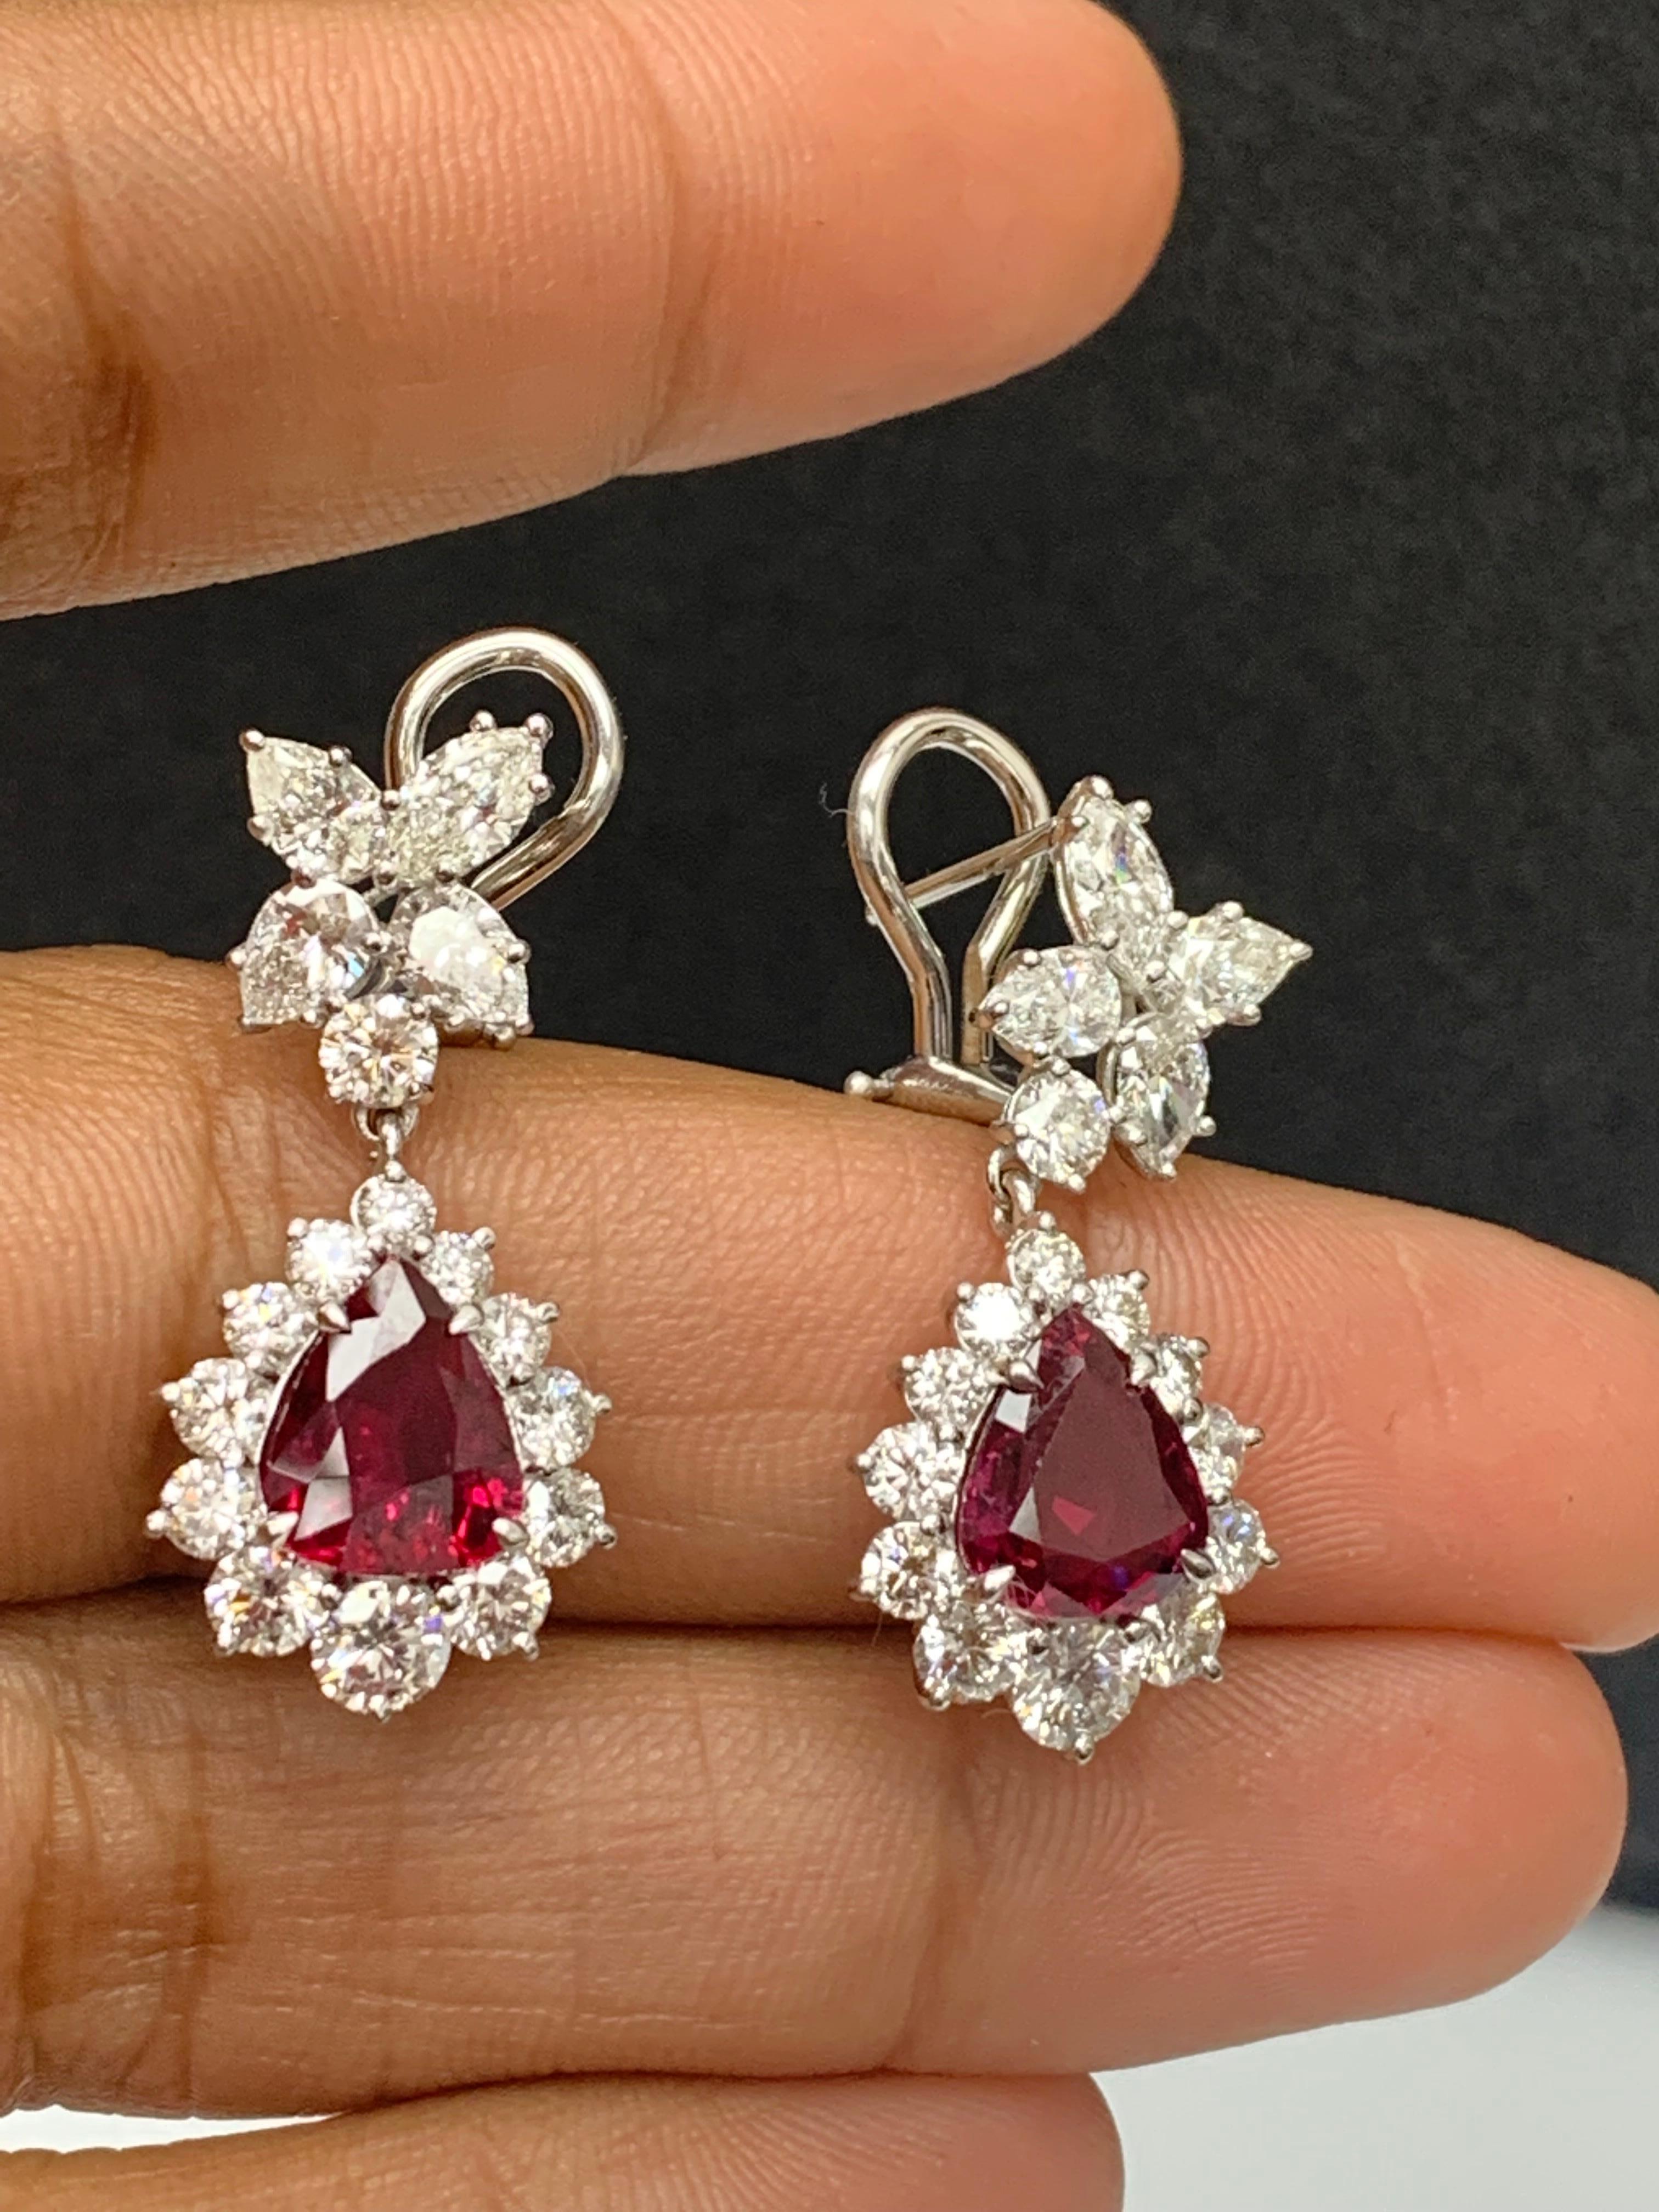 Certified 4.02 Carat Pear Shape Rubies & Diamond Drop Earrings in 18K White Gold For Sale 5